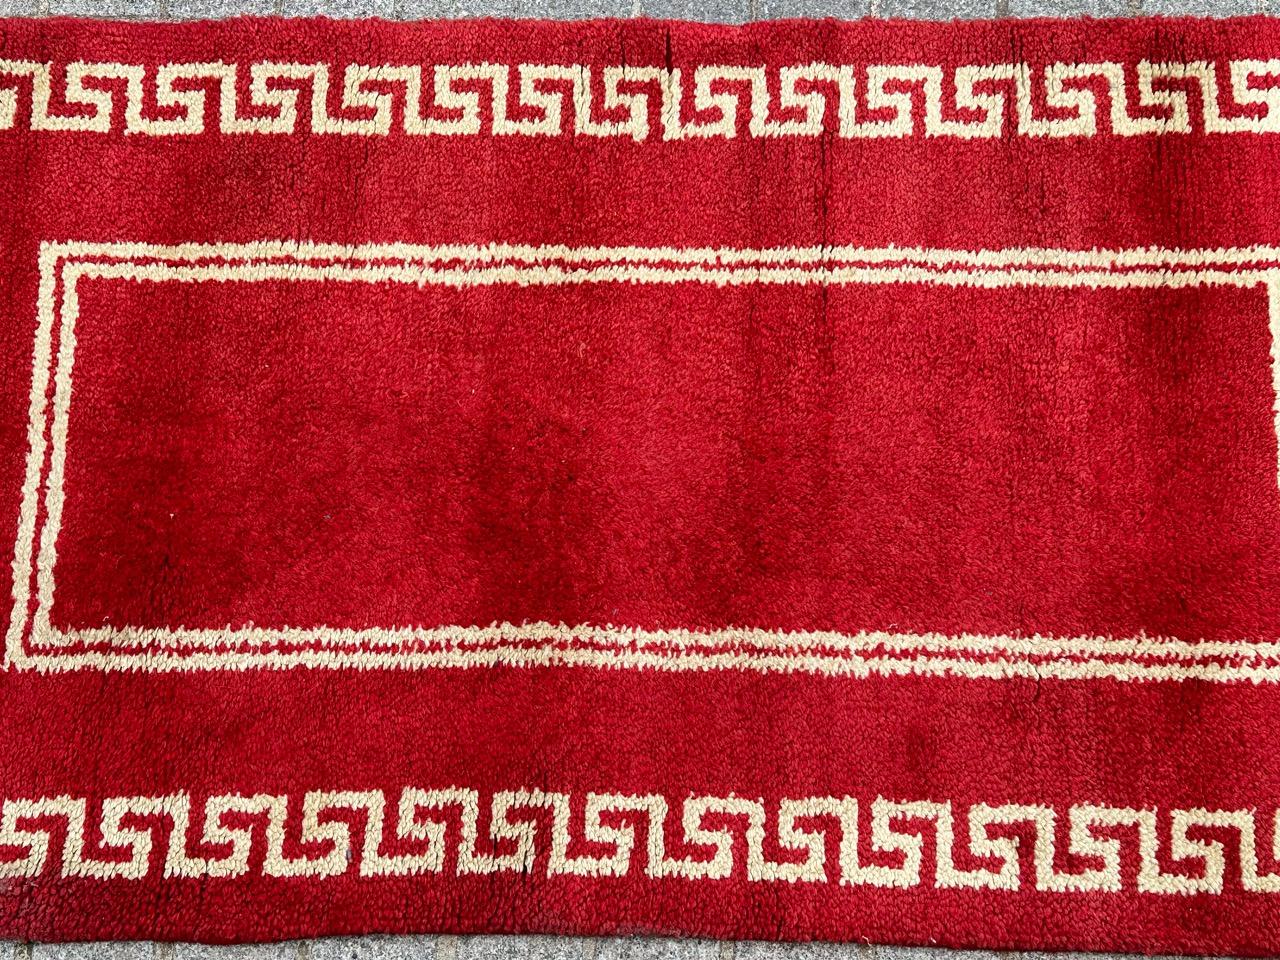 Sehr schöner französischer Teppich aus der Mitte des Jahrhunderts, wahrscheinlich von der Manufaktur Beauvais, um 1940, mit einfachem Art-Deco-Design und schönen Farben mit rotem Hintergrund und weißem Muster, komplett handgeknüpft mit Wolle auf